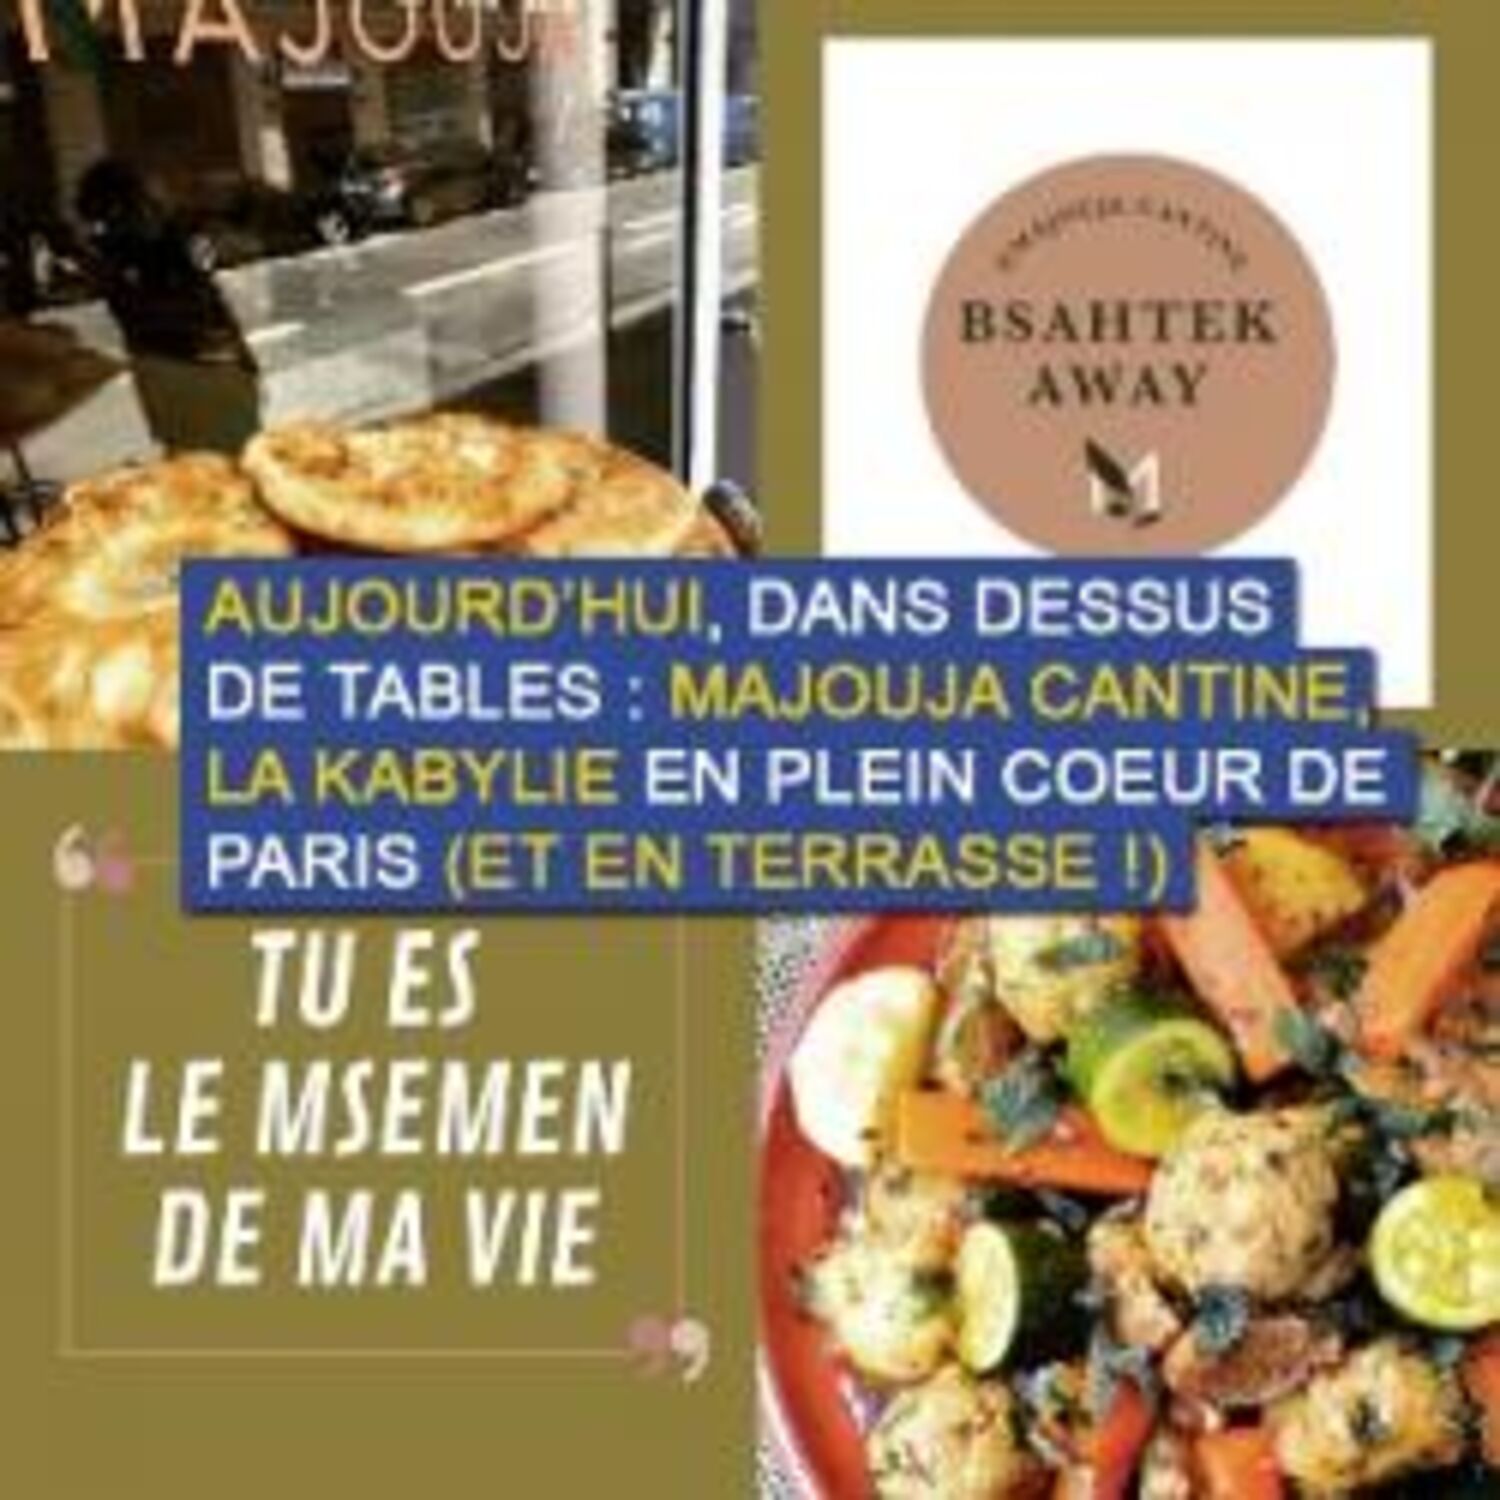 Dessus de tables du 12-06-2021 : Majouja Cantine et sa cuisine Kabyle